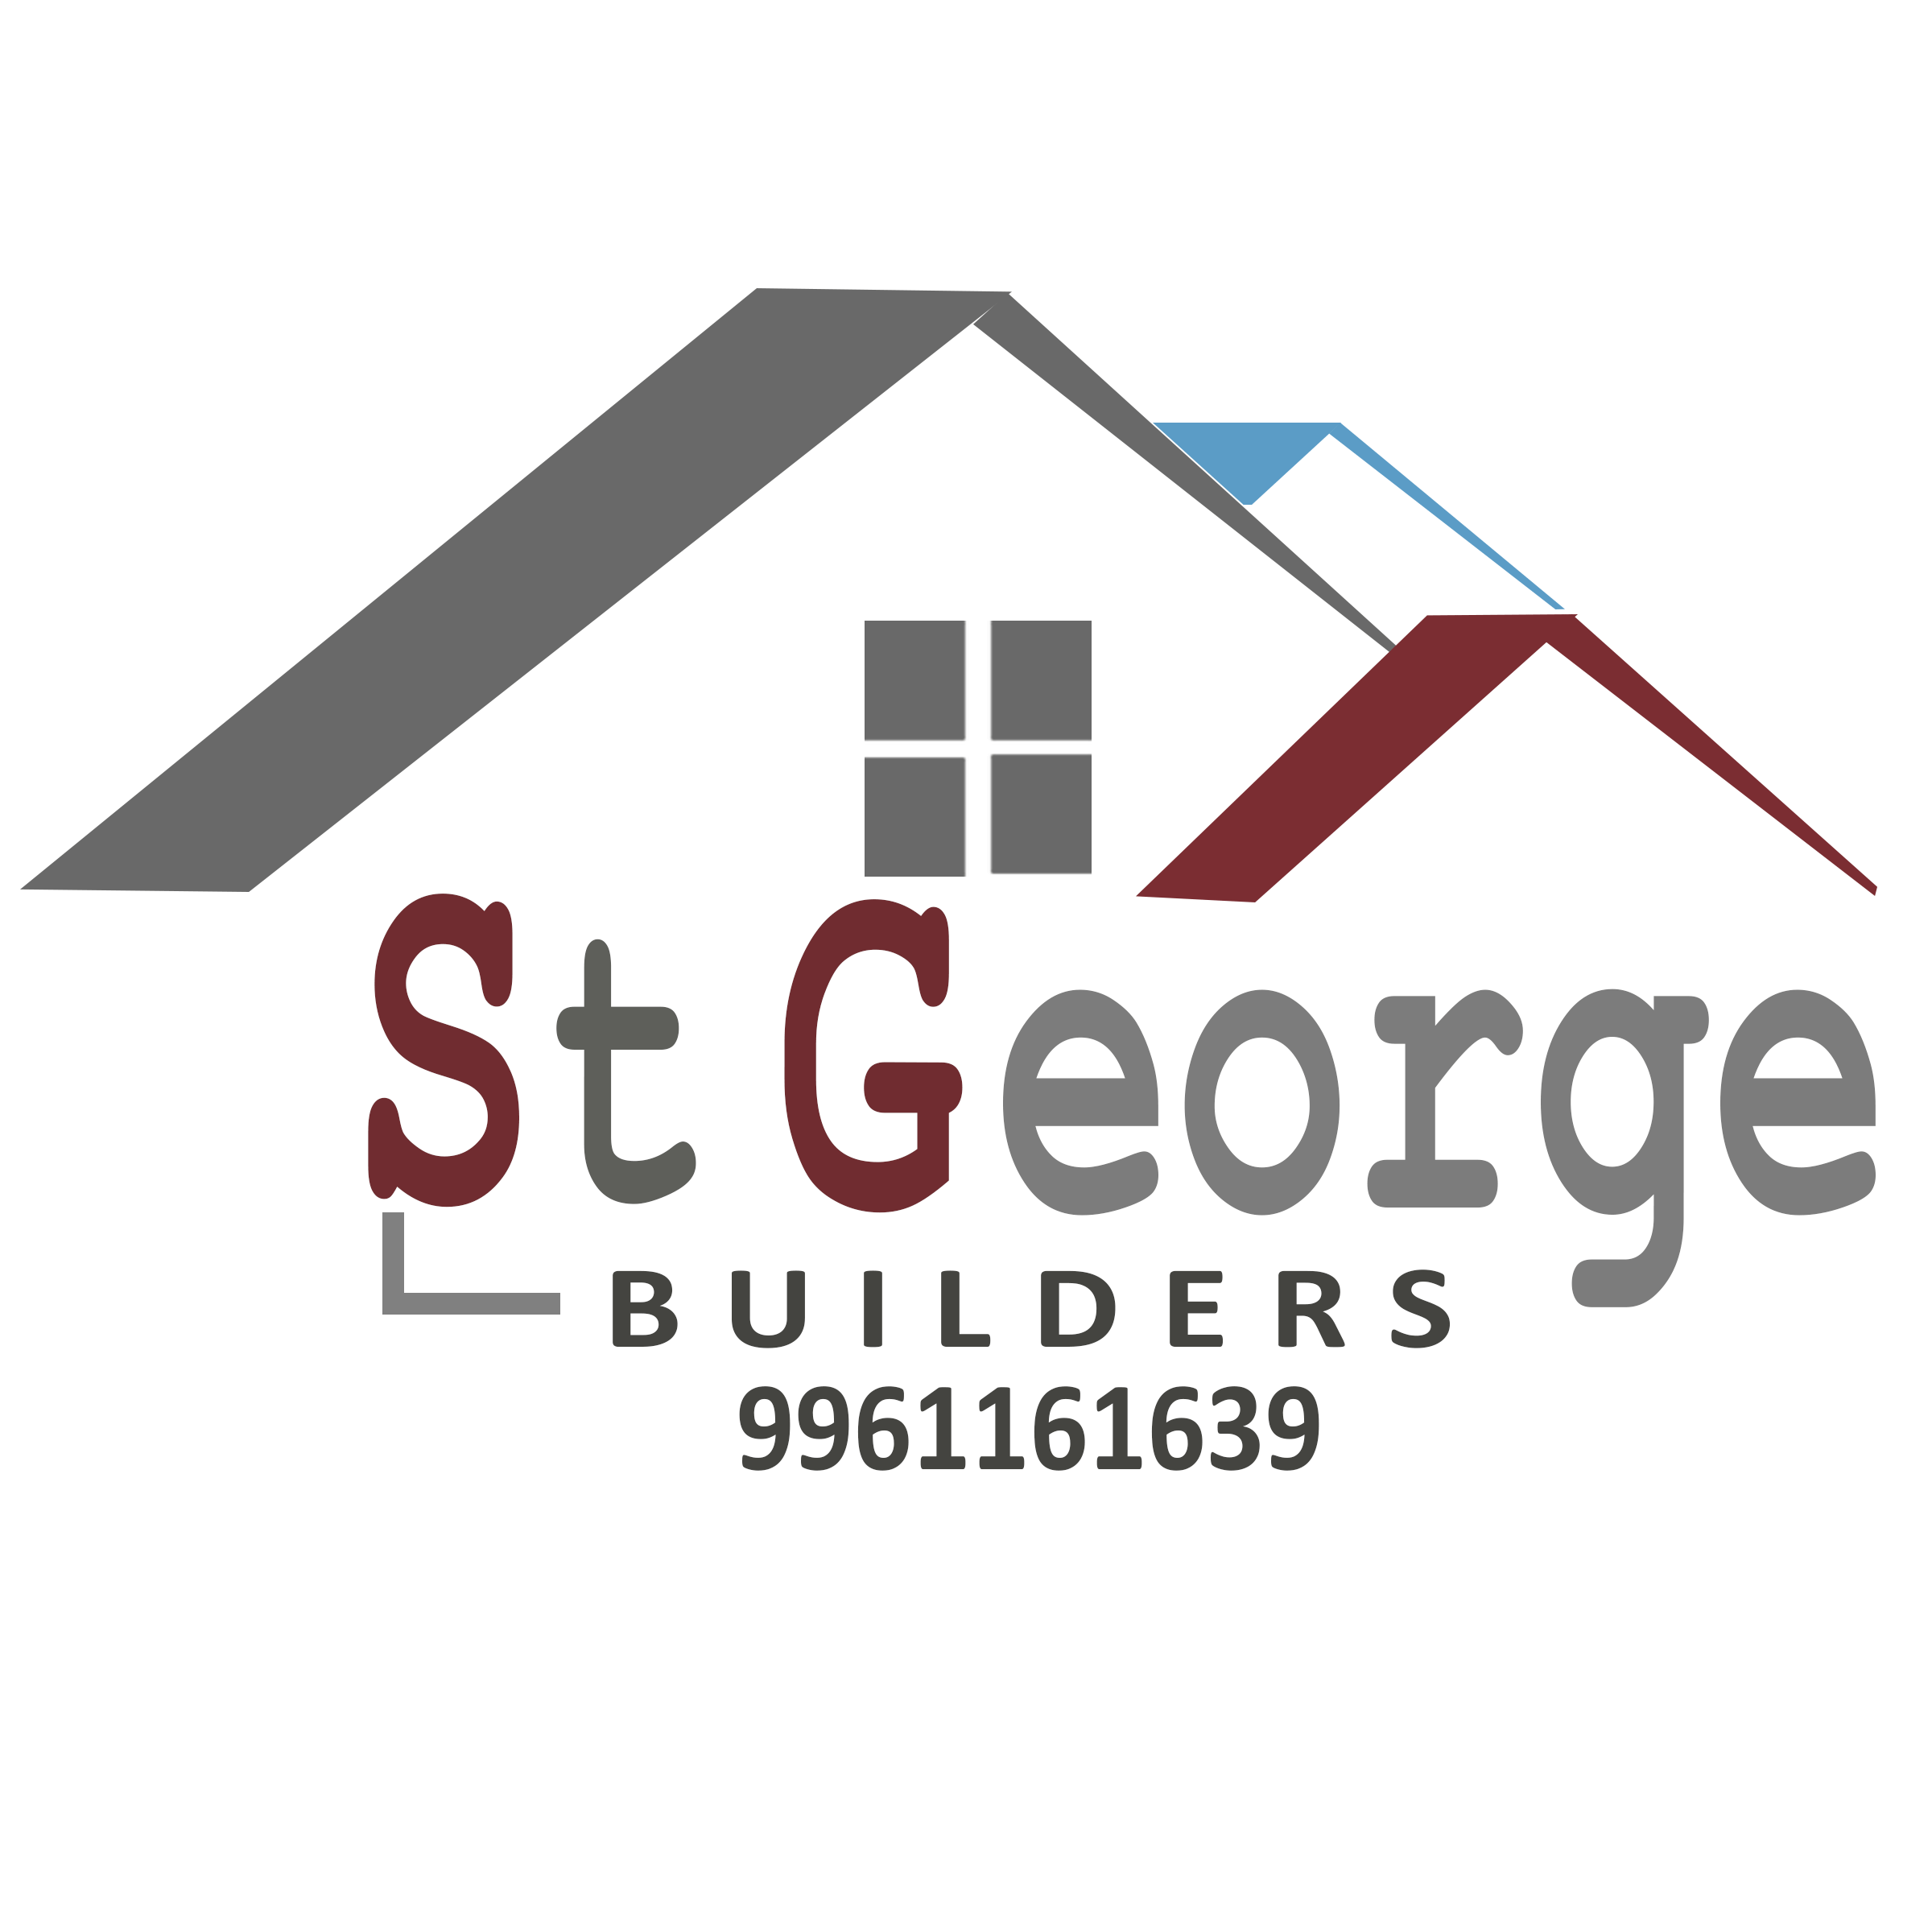 St George Builders 